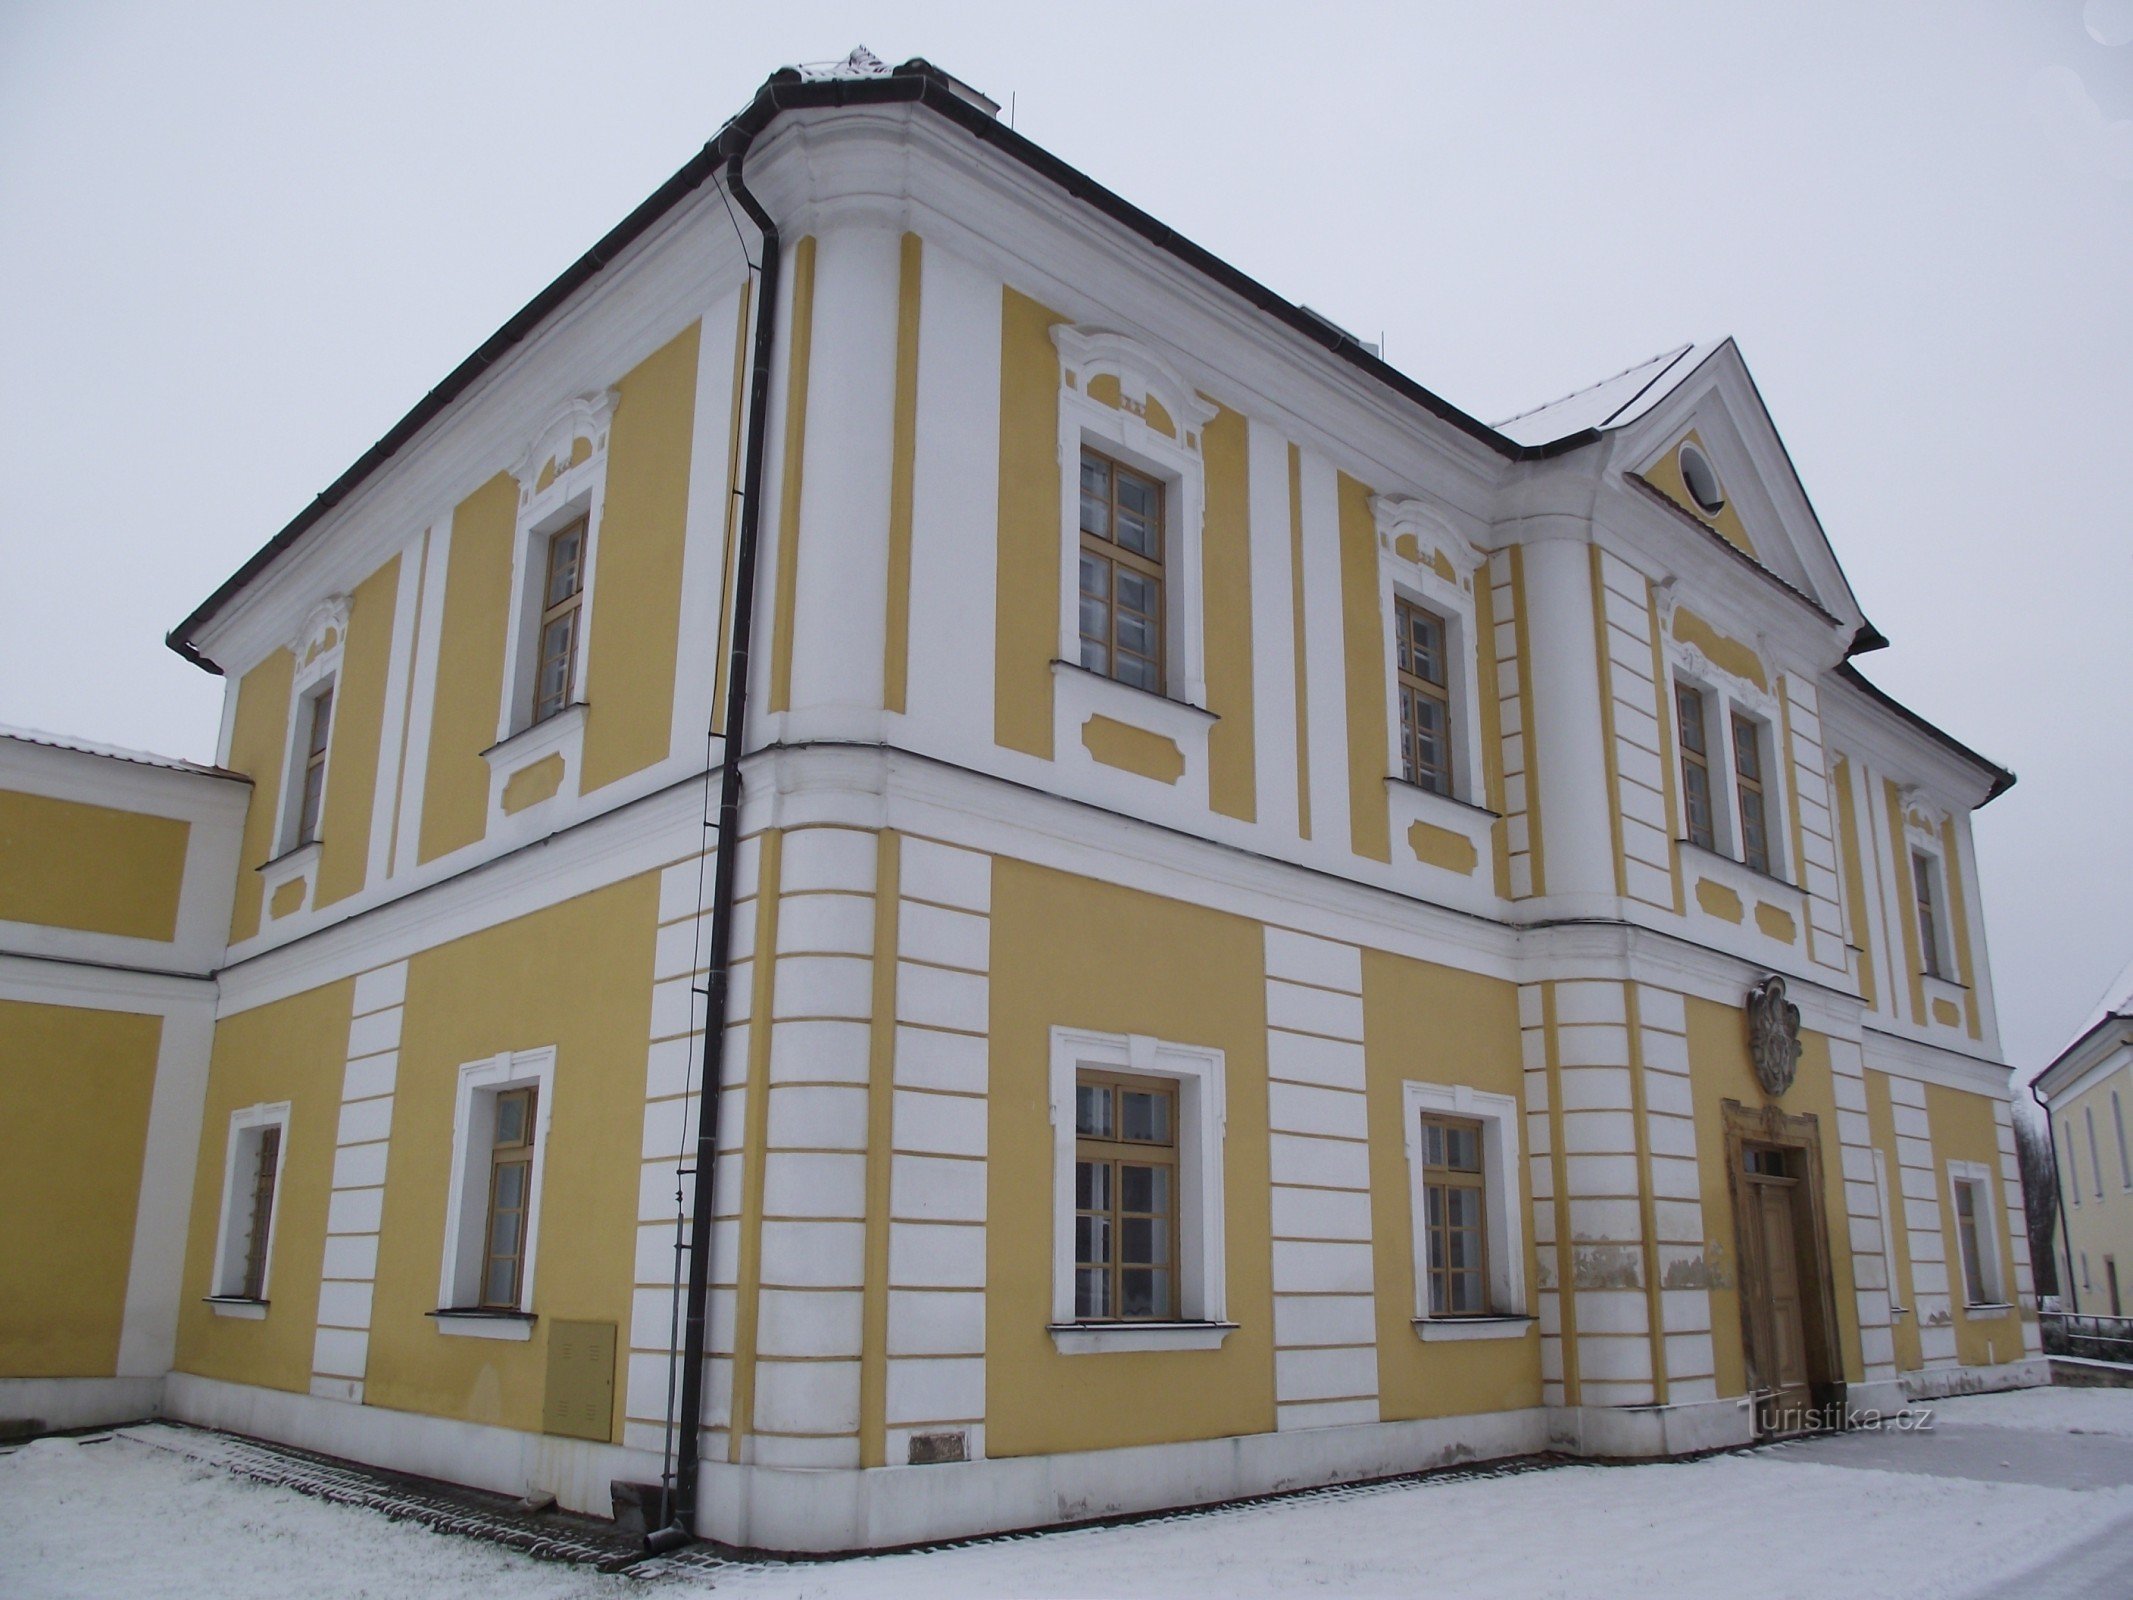 Cetkovice – uma reitoria chamada castelo (ou um castelo barroco servindo como reitoria?)